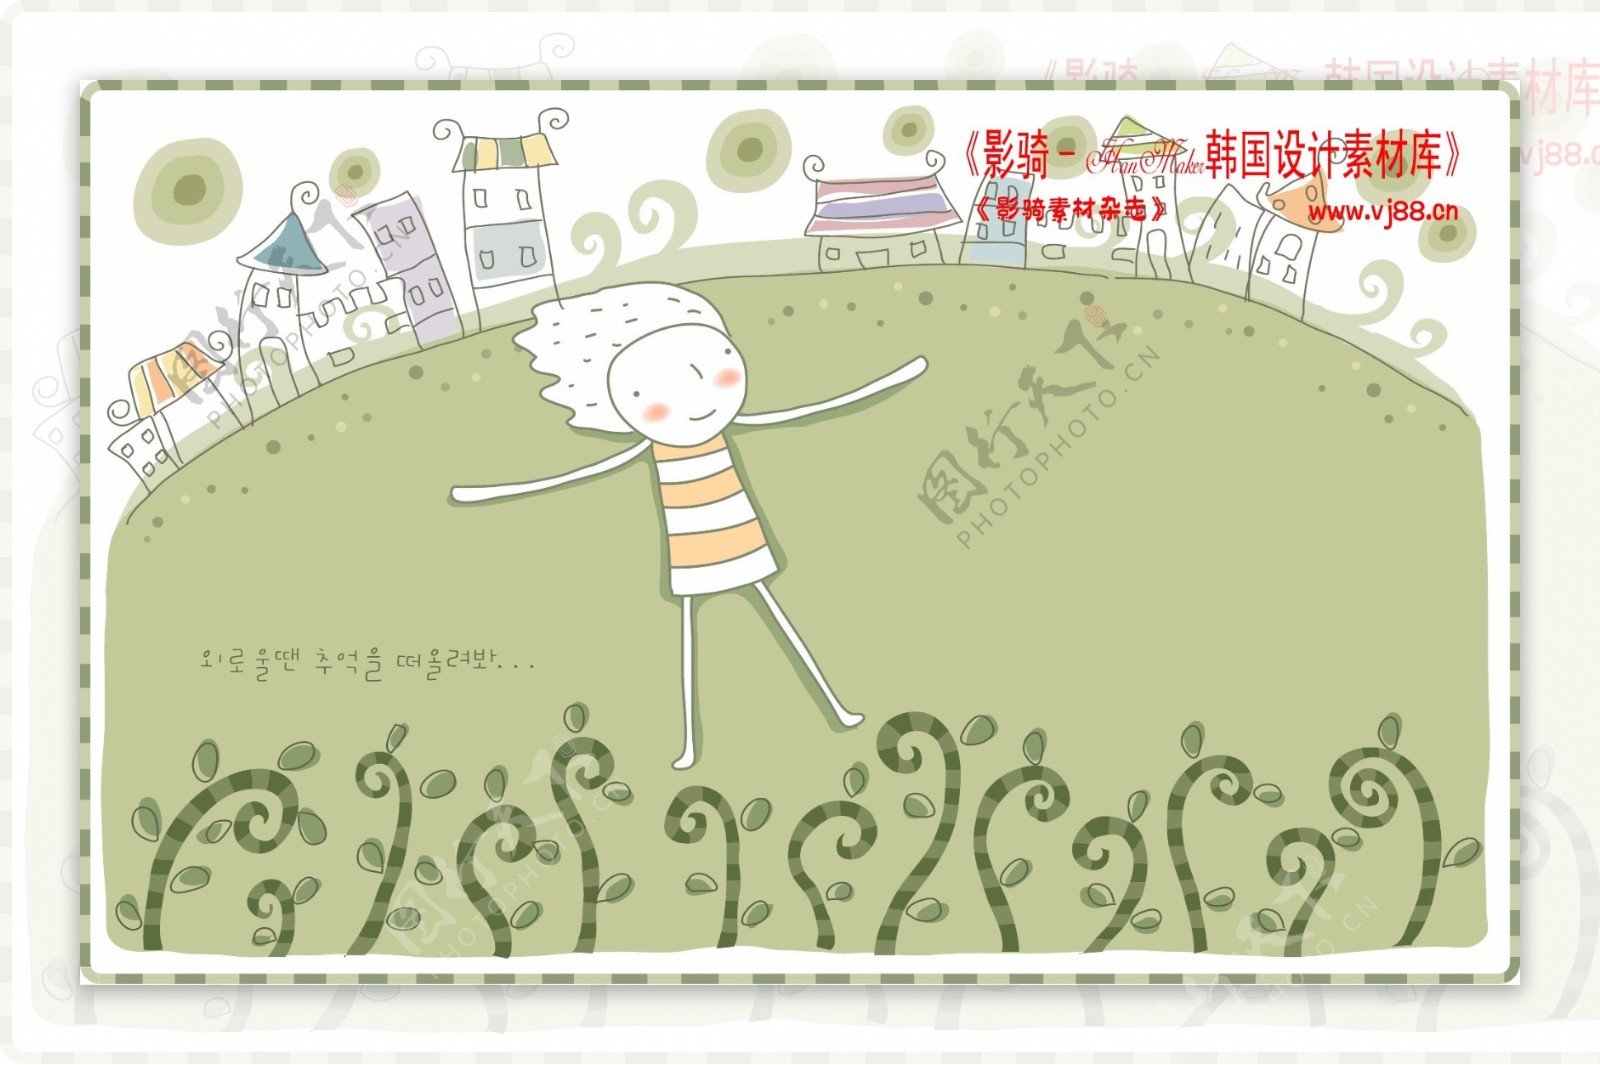 简单生活插画旅游度假家庭生活幸福生活矢量素材HanMaker韩国设计素材库